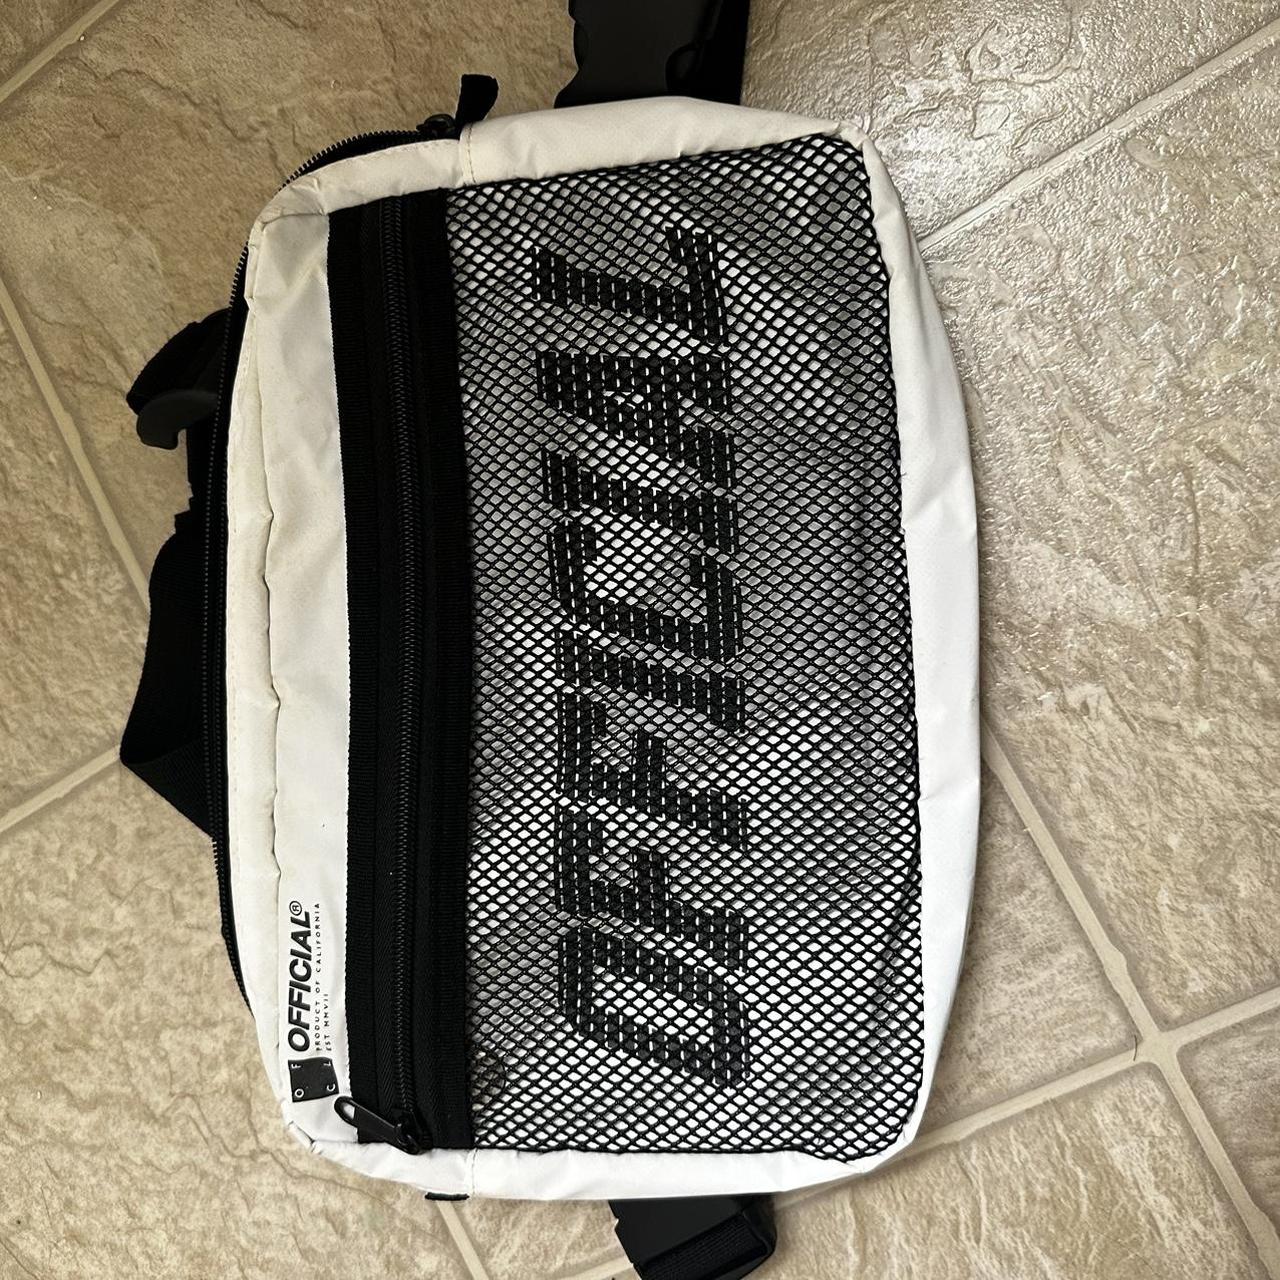 OFFICIAL FRONT BODY BAG 🕸️ Size - Adjustable straps... - Depop